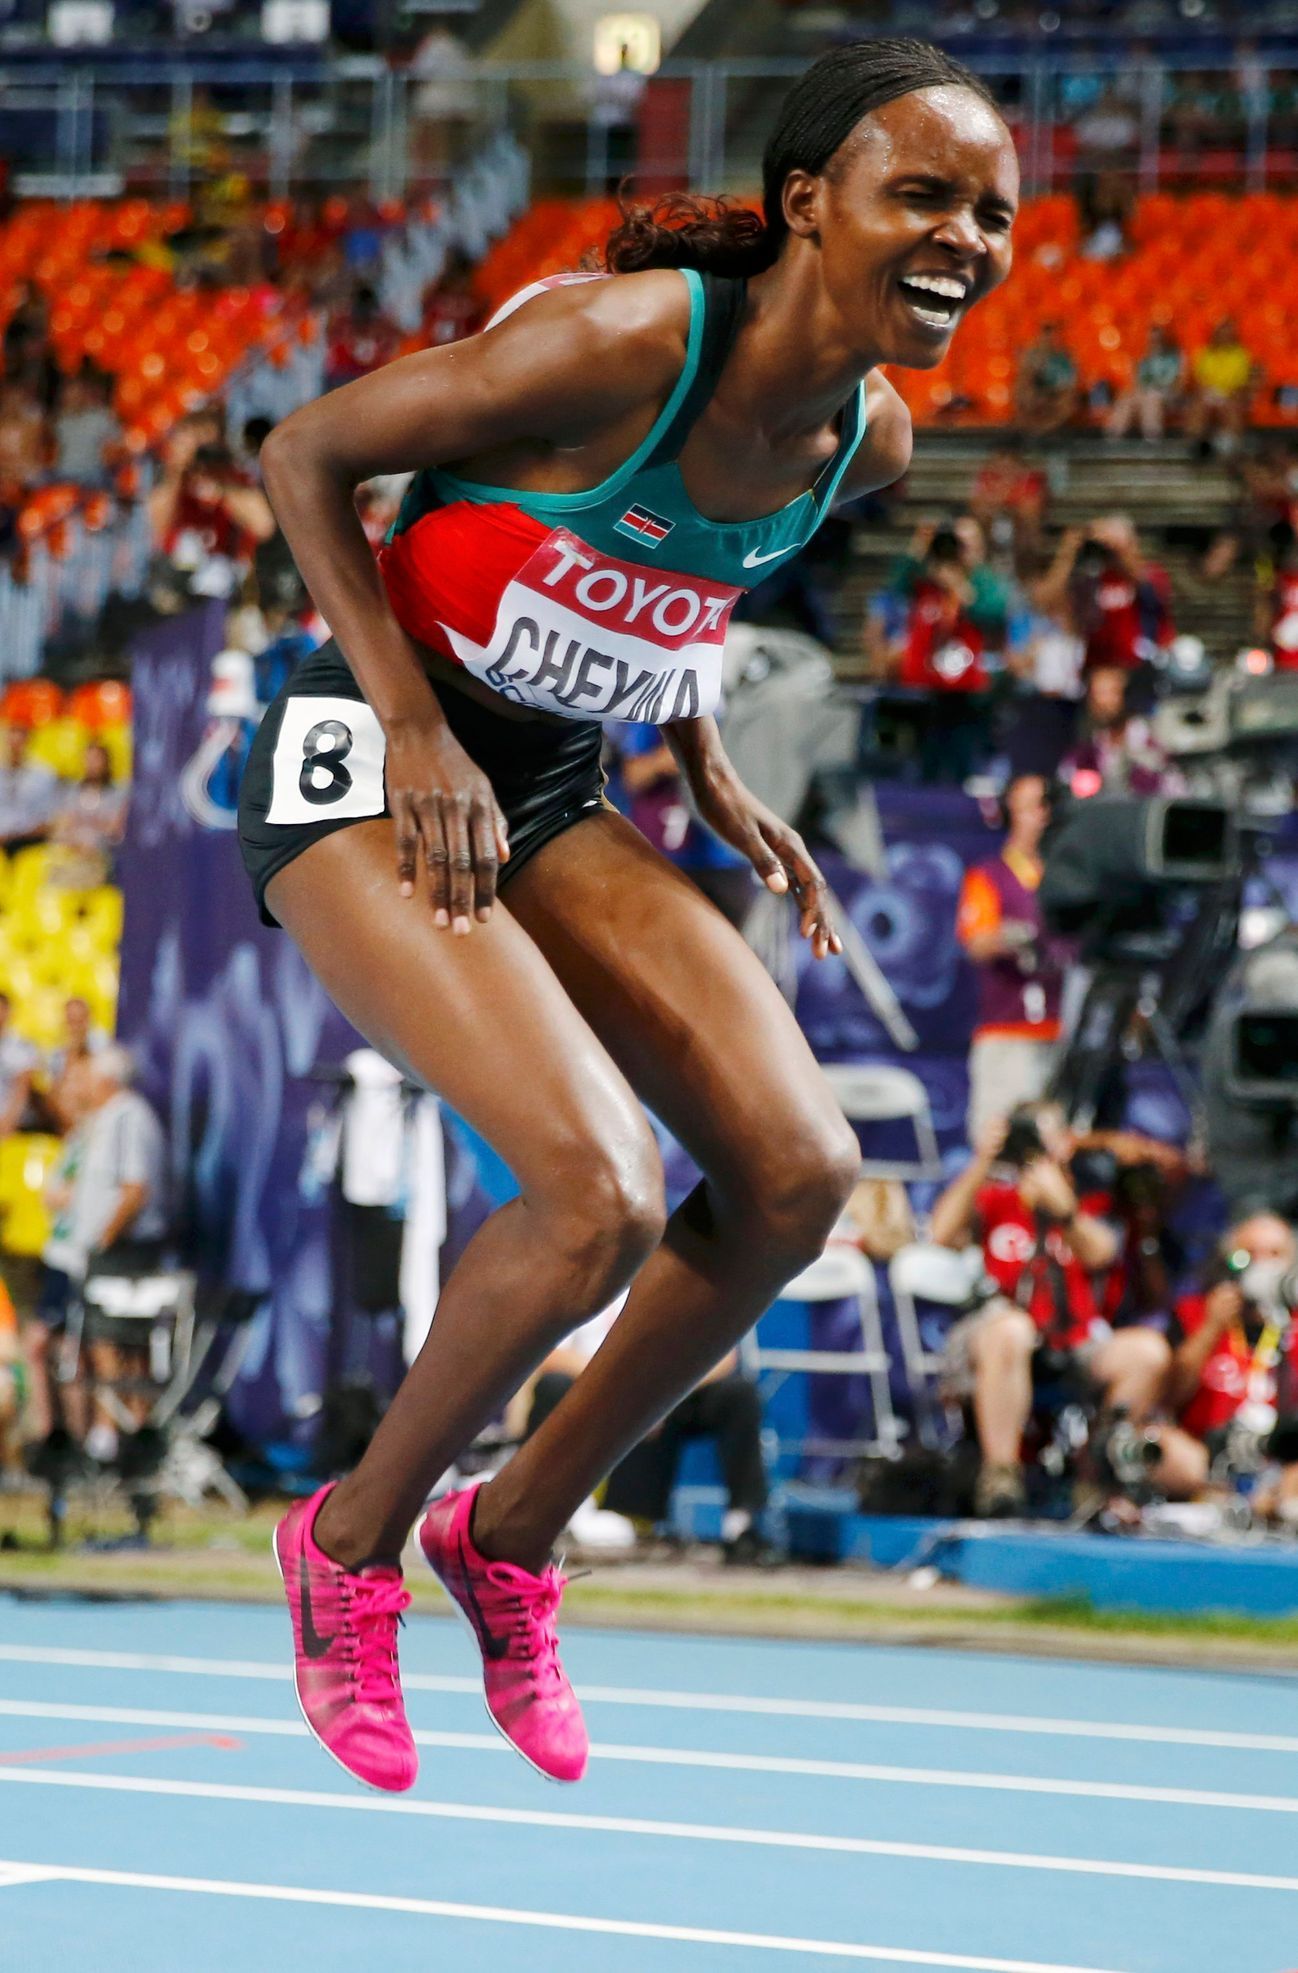 MS v atletice 2013, 3000 m př. žen - finále: Milcah Chemos Cheywaová